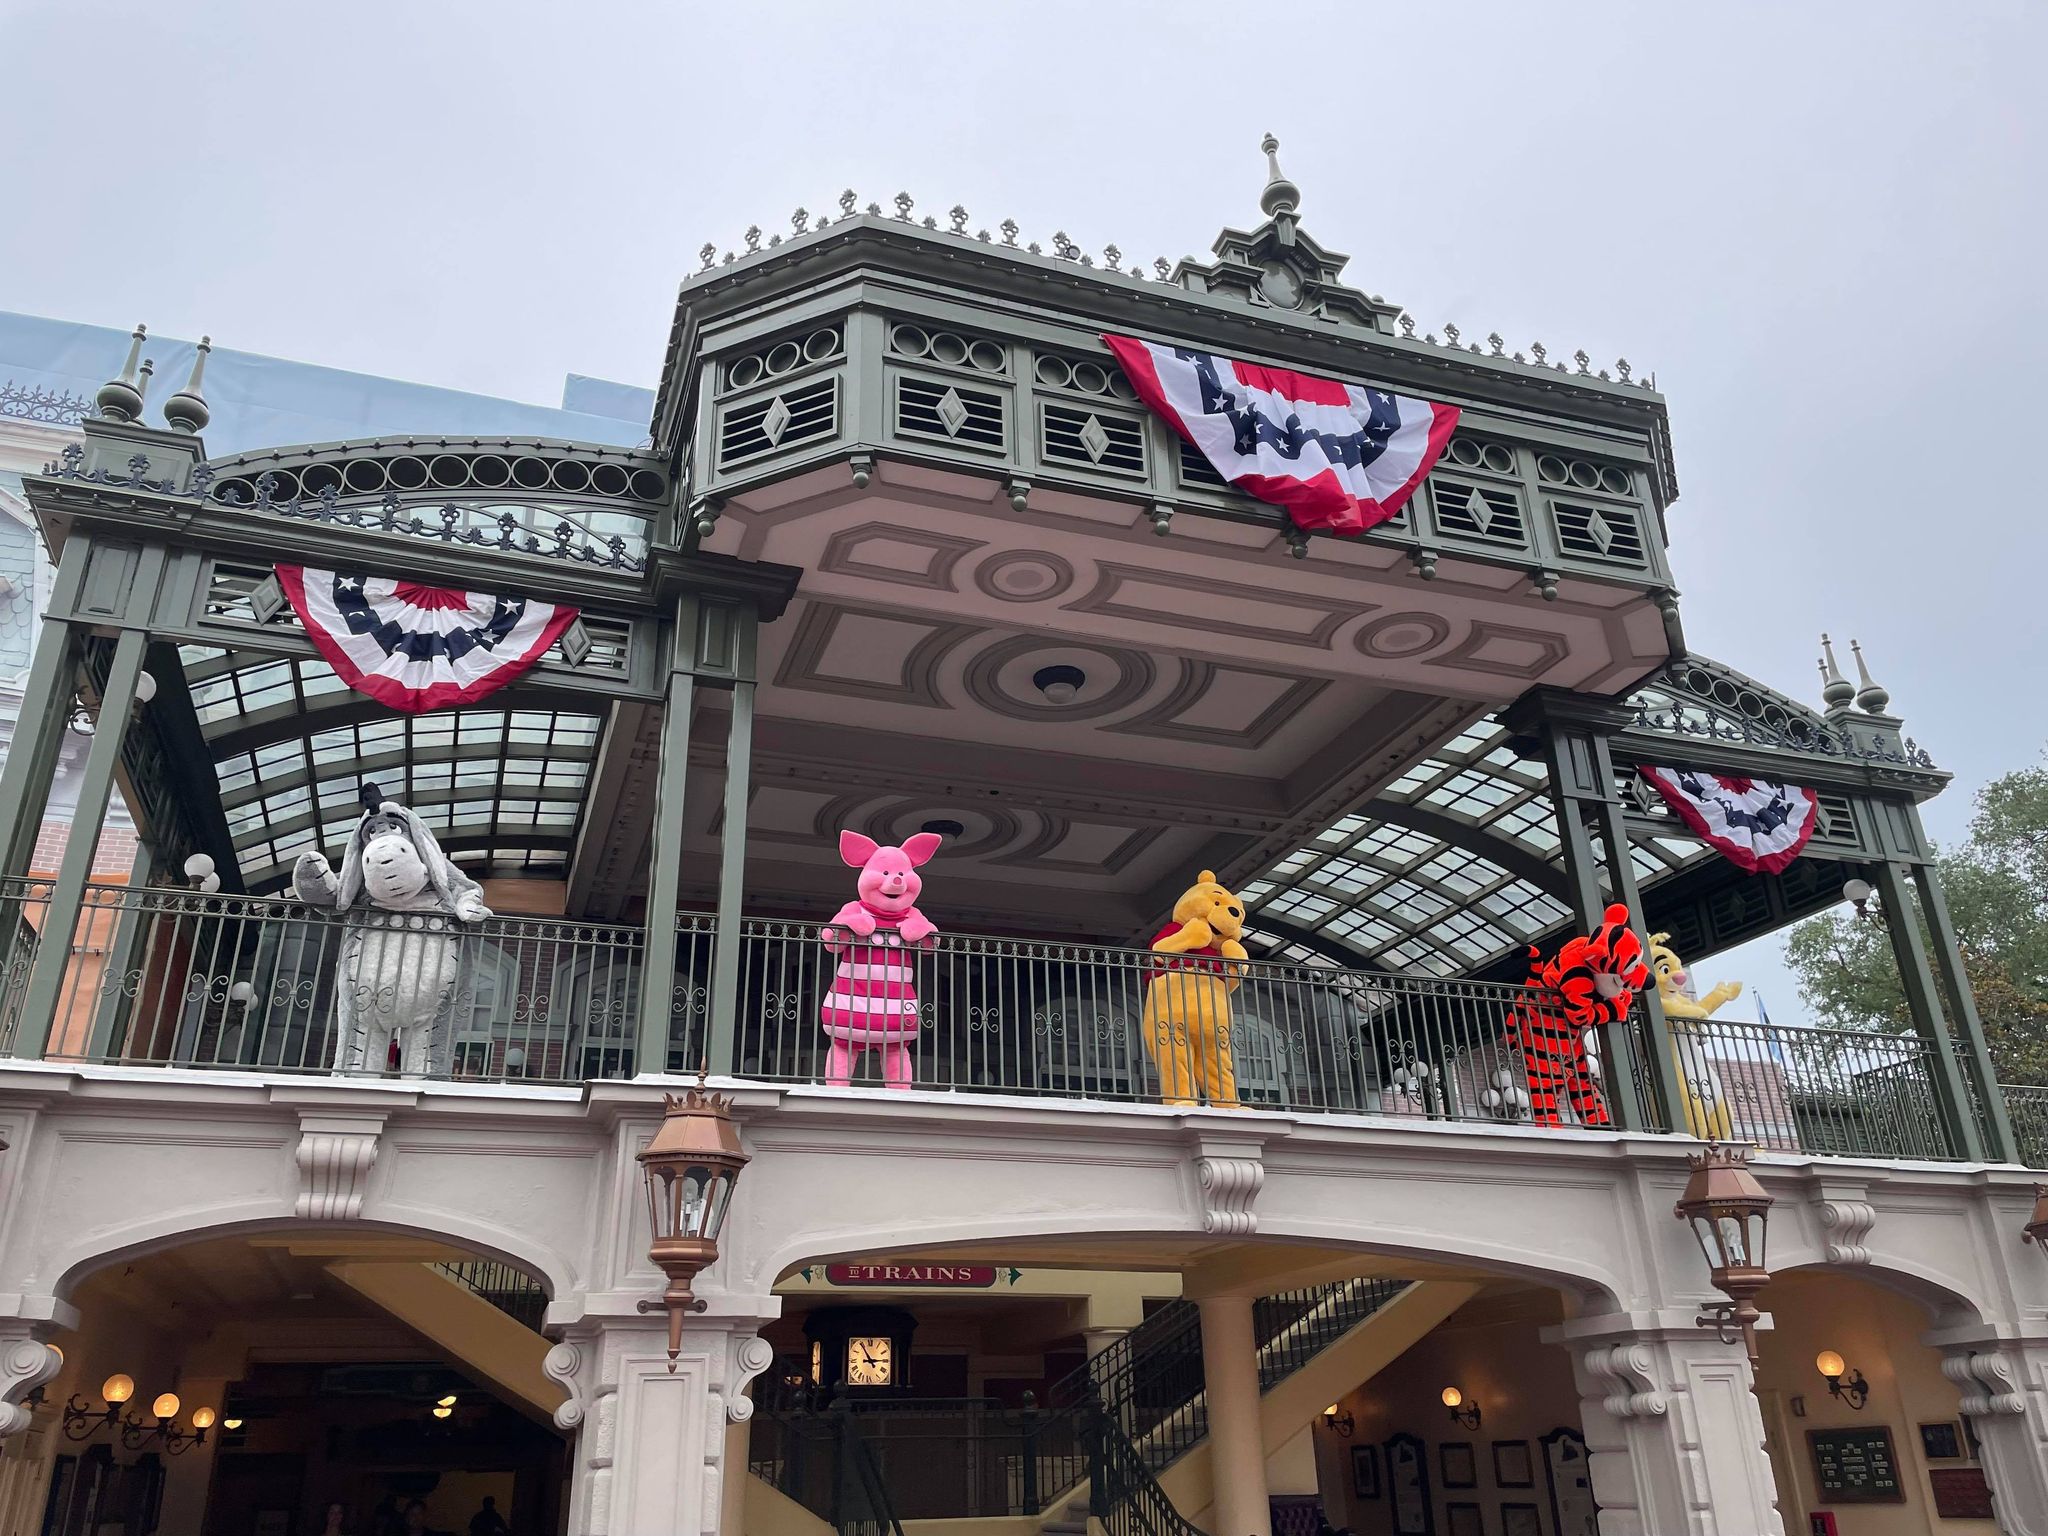 Magic Kingdom Main Street Railroad Station, Walt Disney dev…